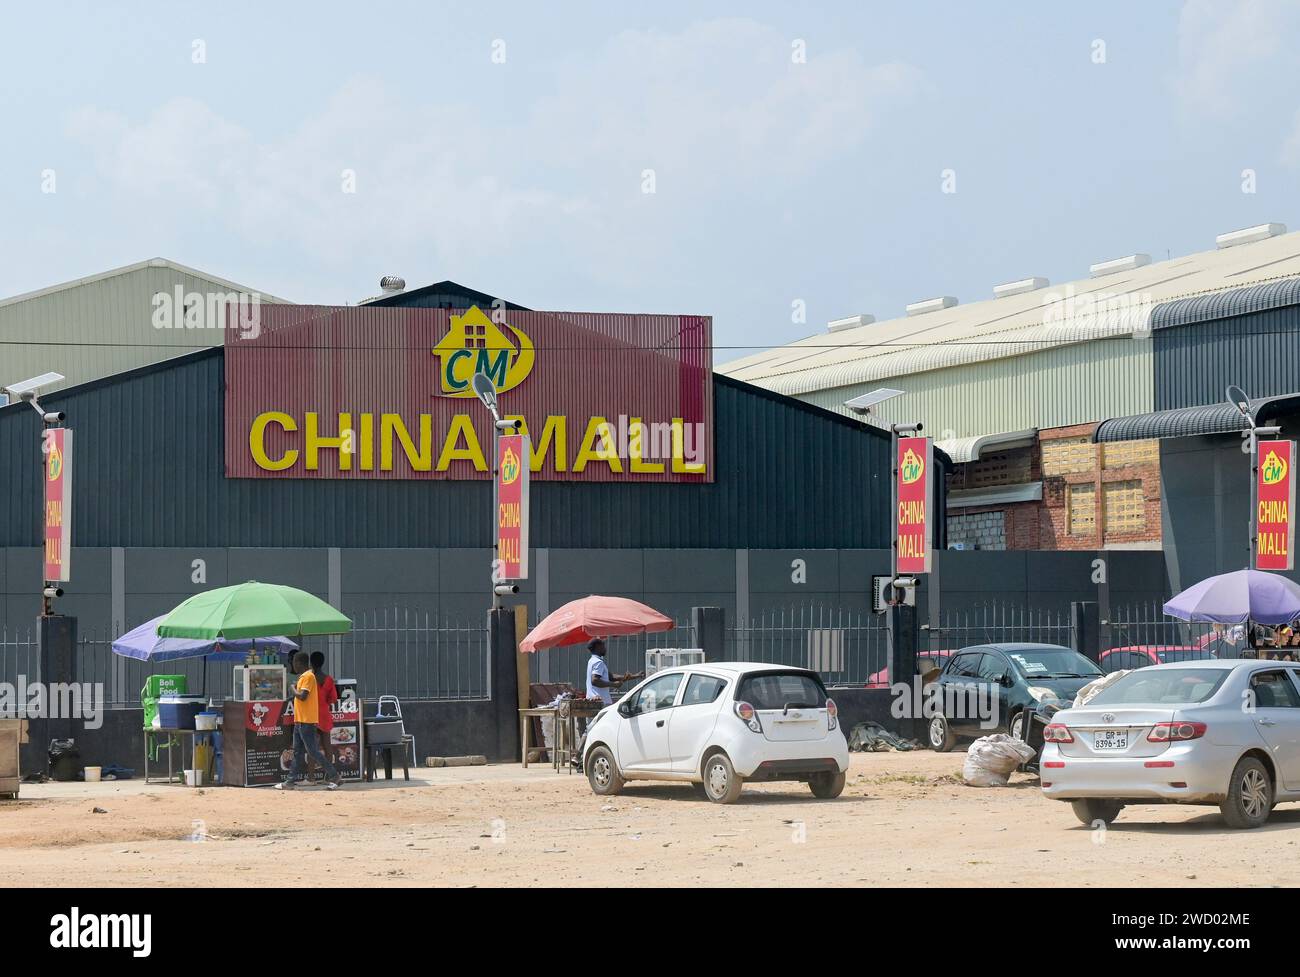 GHANA, chinese owned shopping center China Mall on the Accra - Kumasi Road / GHANA, Einkaufszentrum China Mall an der Accra - Kumasi Autobahn Stock Photo